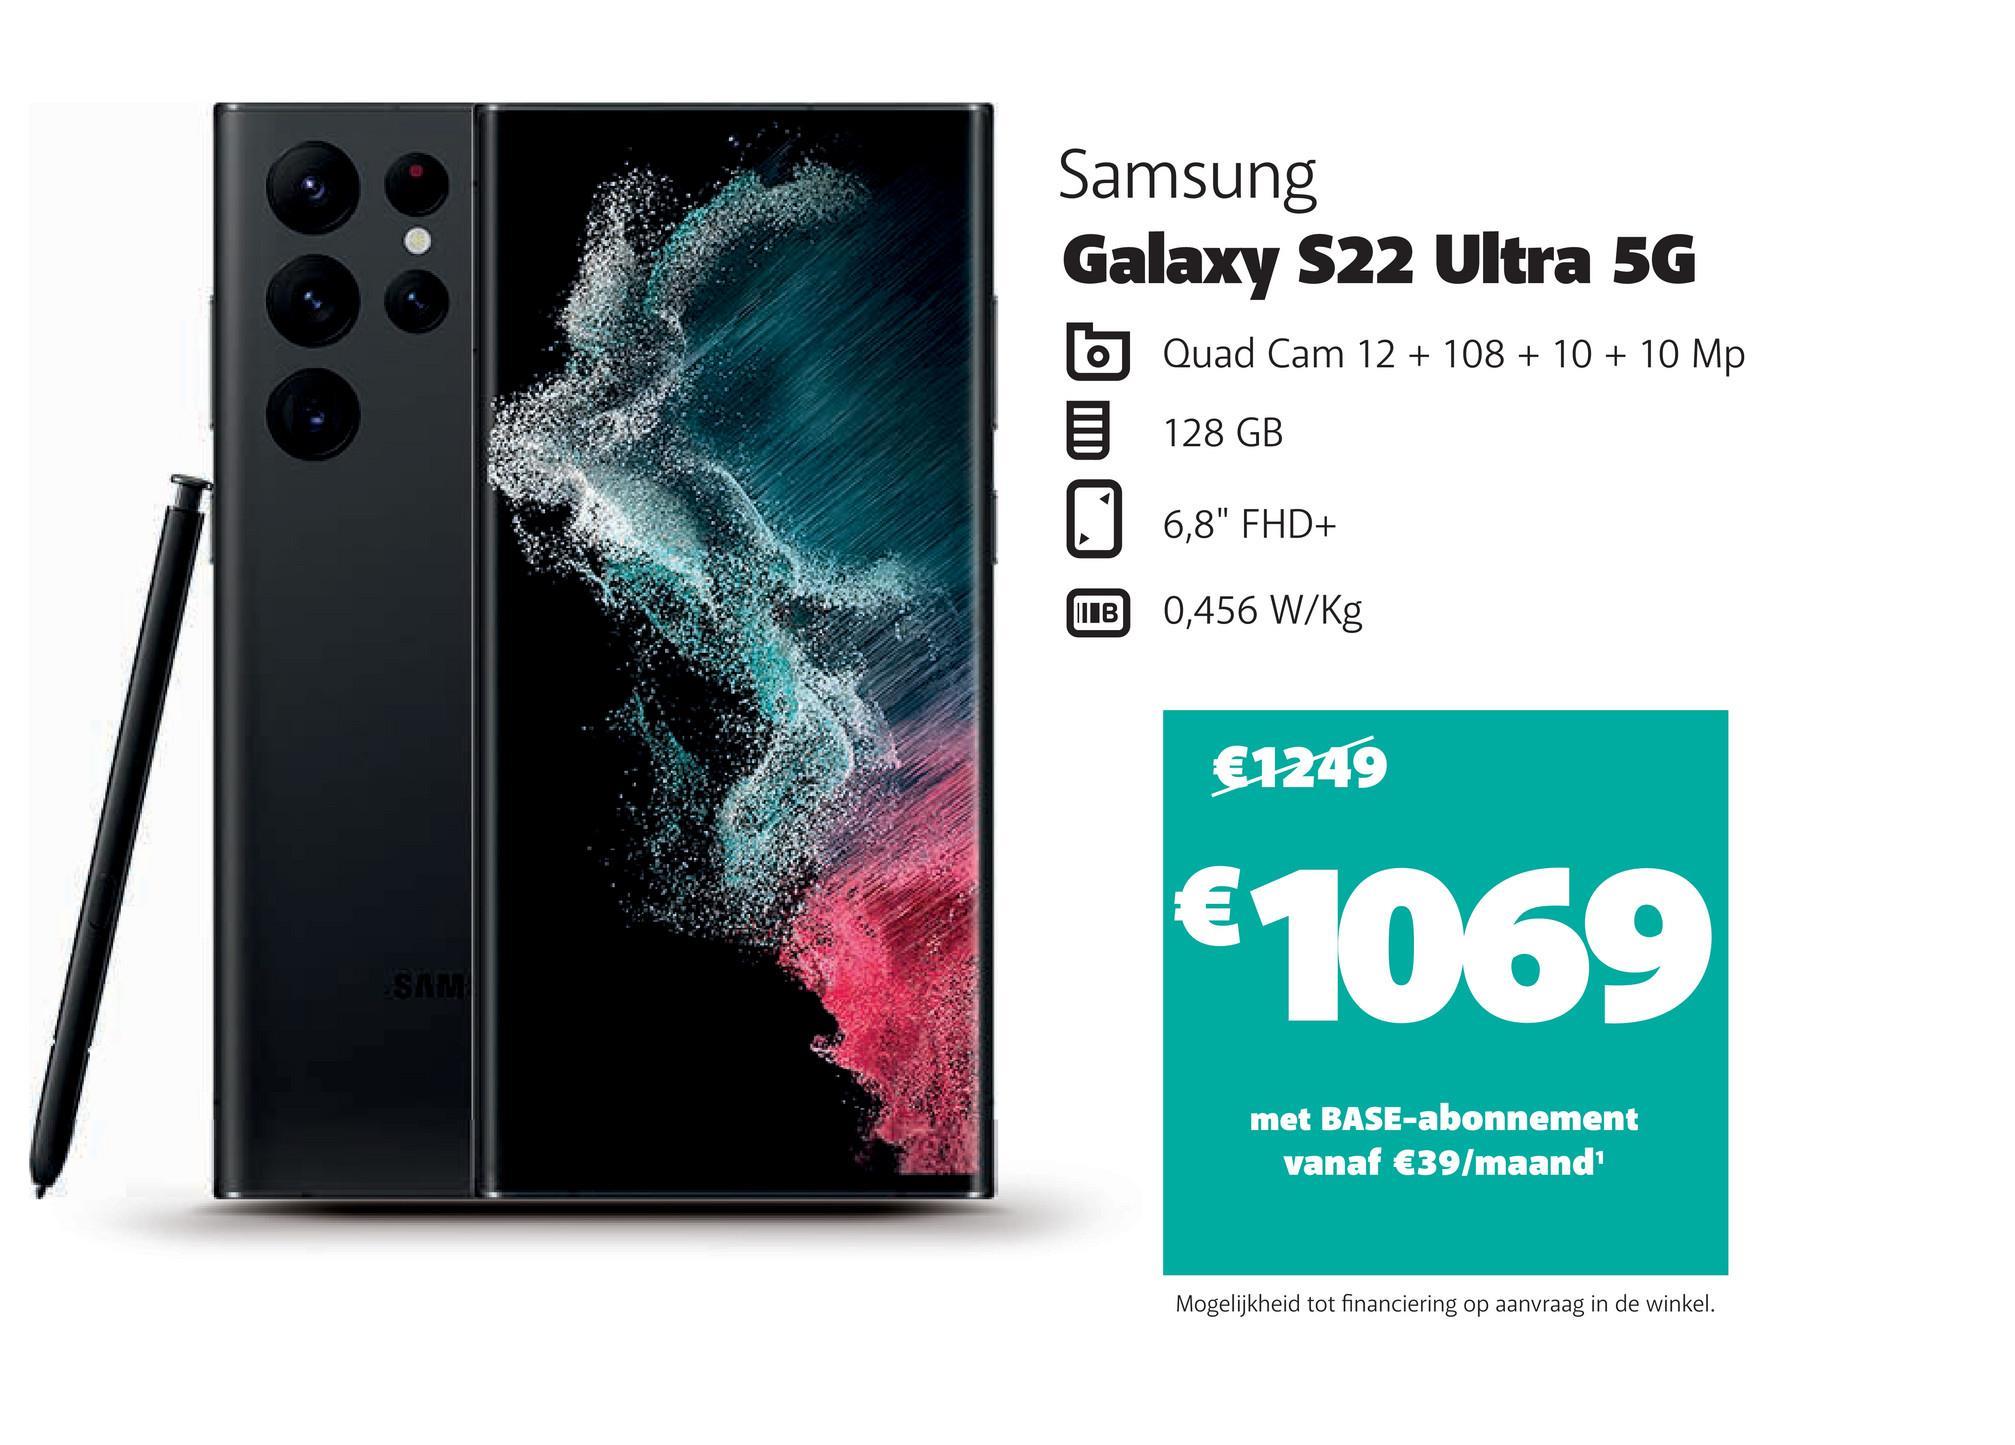 SAM
Samsung
Galaxy S22 Ultra 5G
Quad Cam 12 + 108 + 10 + 10 Mp
128 GB
||| В
6,8" FHD+
0,456 W/kg
€1249
€1069
met BASE-abonnement
vanaf €39/maand¹
Mogelijkheid tot financiering op aanvraag in de winkel.